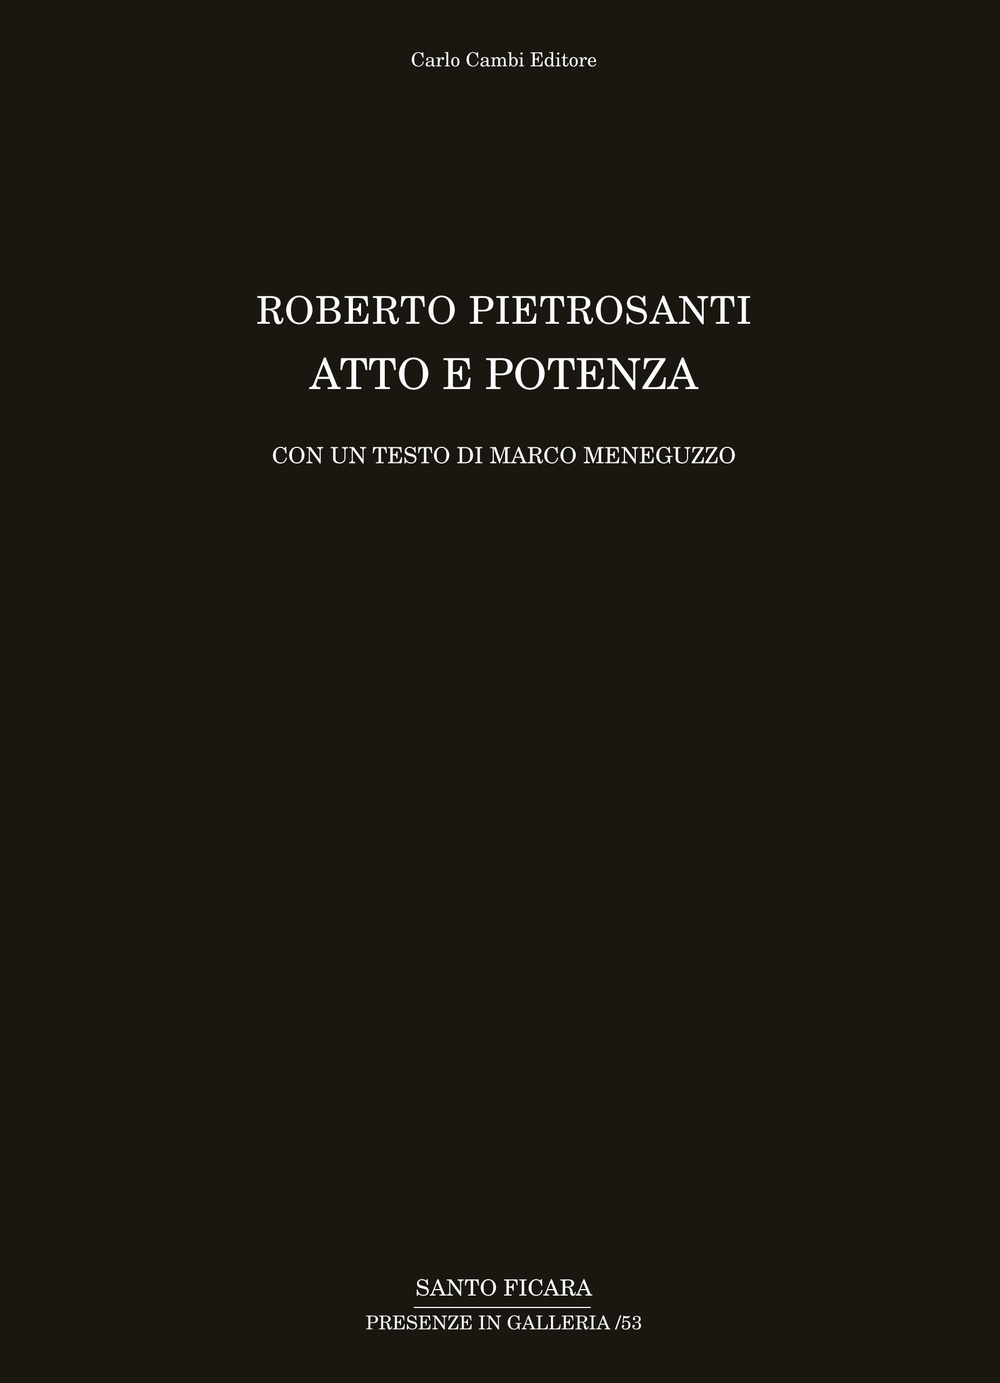 Roberto Pietrosanti. Atto e potenza